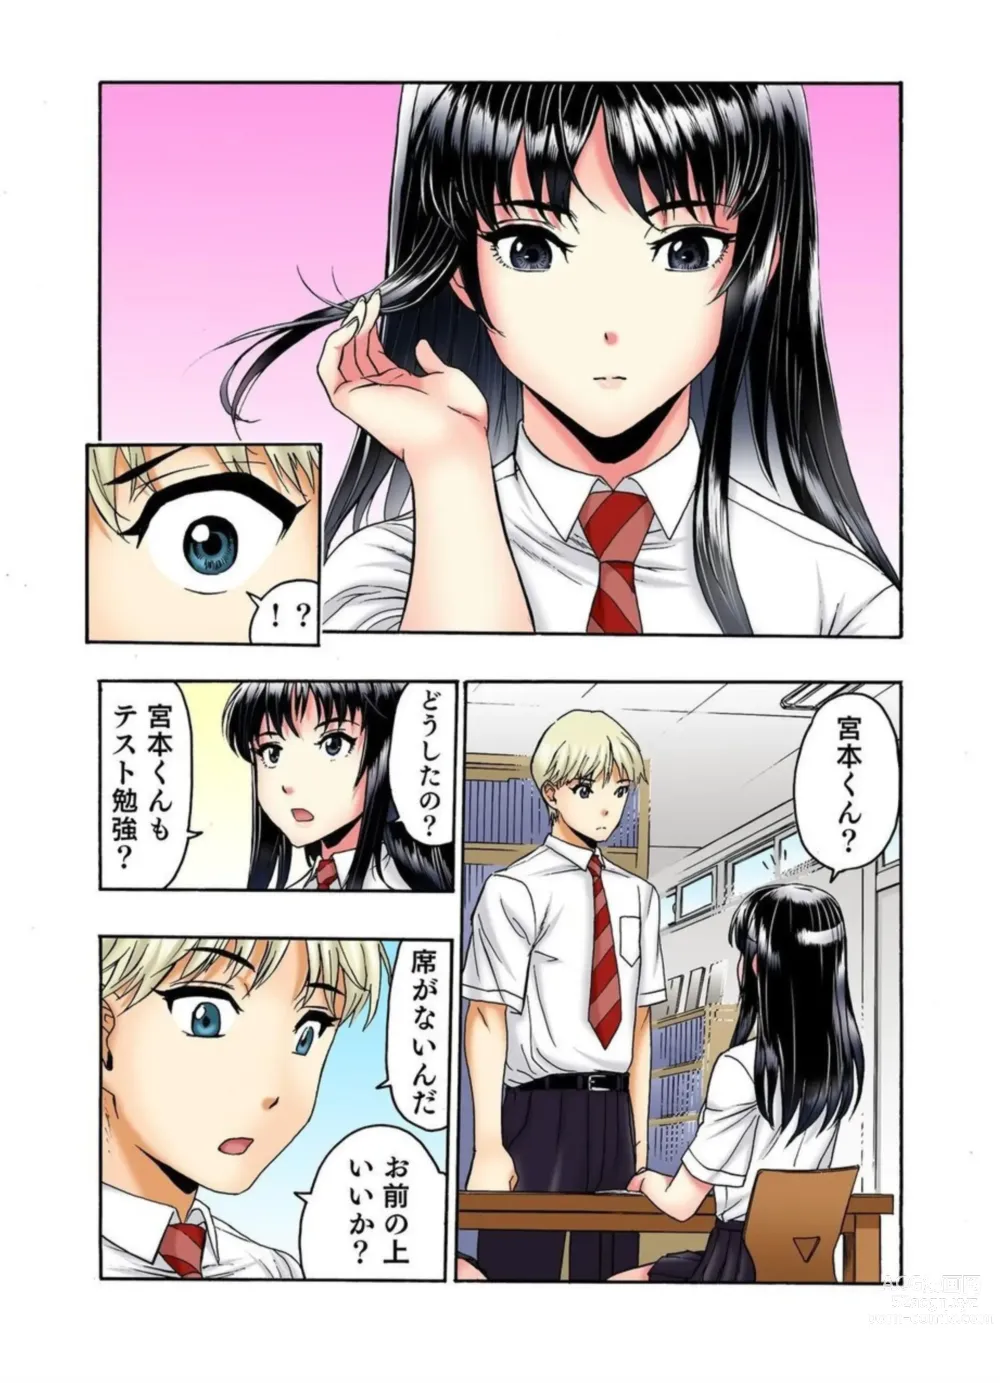 Page 40 of manga Tenkousei no Seki ga Ore no Hiza no Ue ni Kimatta no de Hame Temita Dai 2-bu 1-2